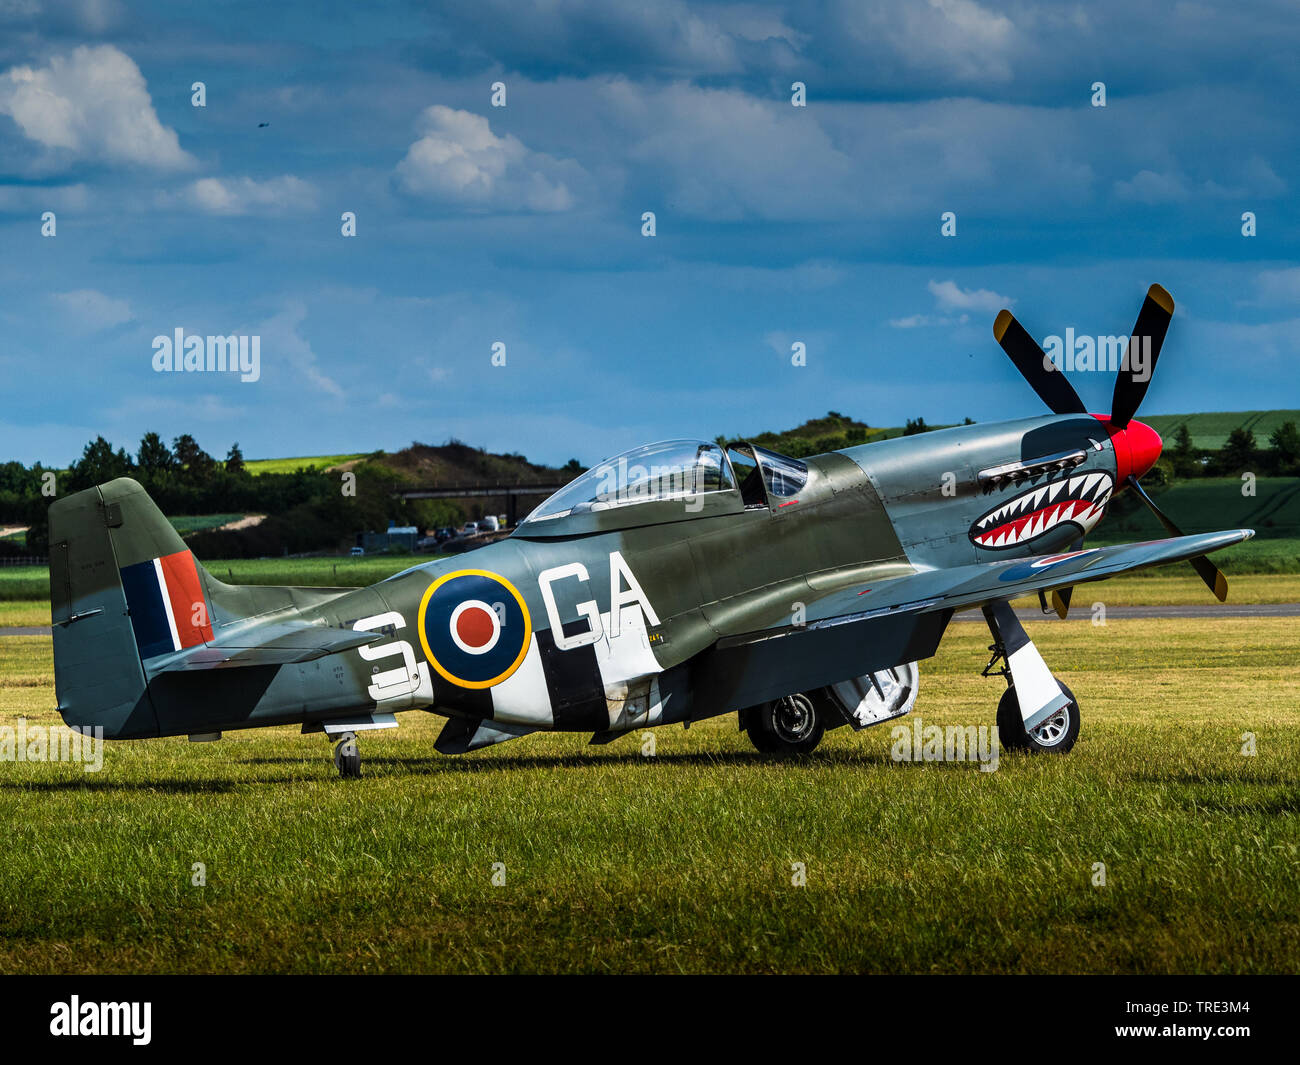 RAF Mustang - RAF P51 Mustang fighter. Amérique du Nord P-51 D Mustang G-SHWN dans les couleurs de l'Escadron RAF 112. Aéronef construit 1944.KH774 «GA-S» Banque D'Images